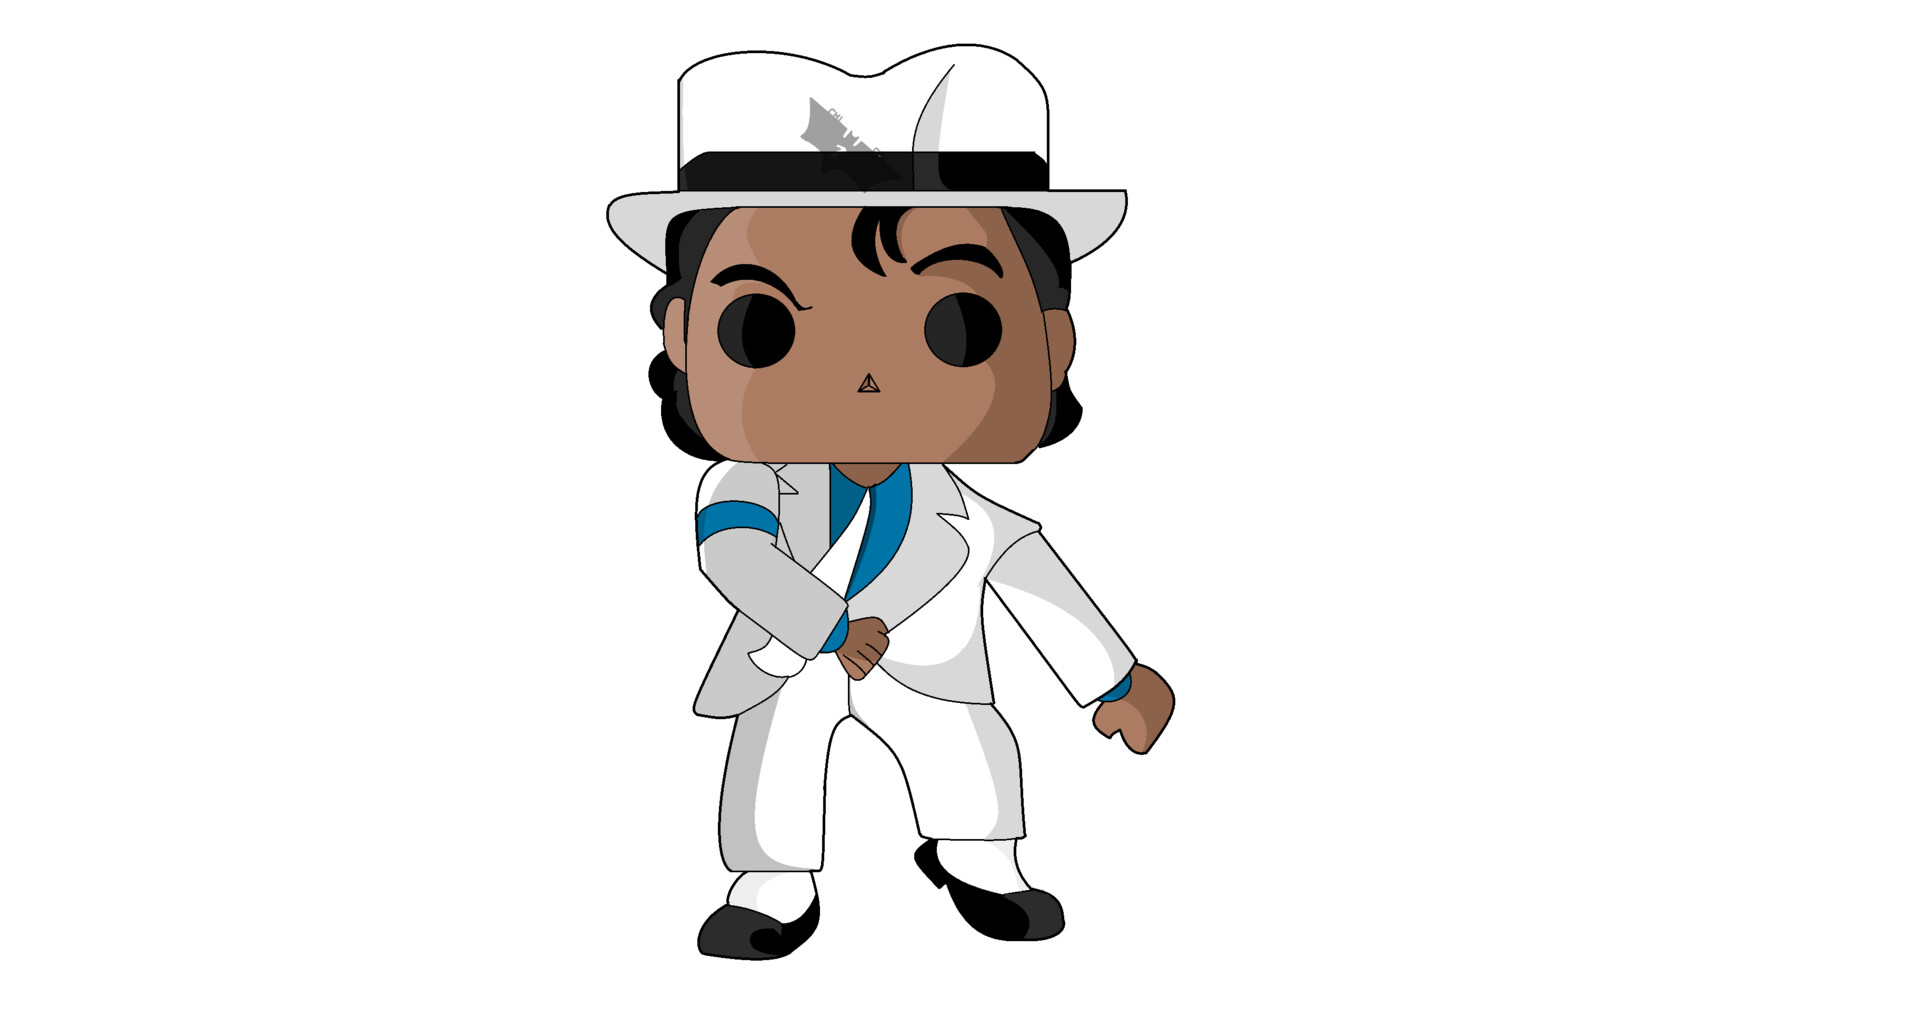 Michael Jackson Funko Pop in Funko Pop 